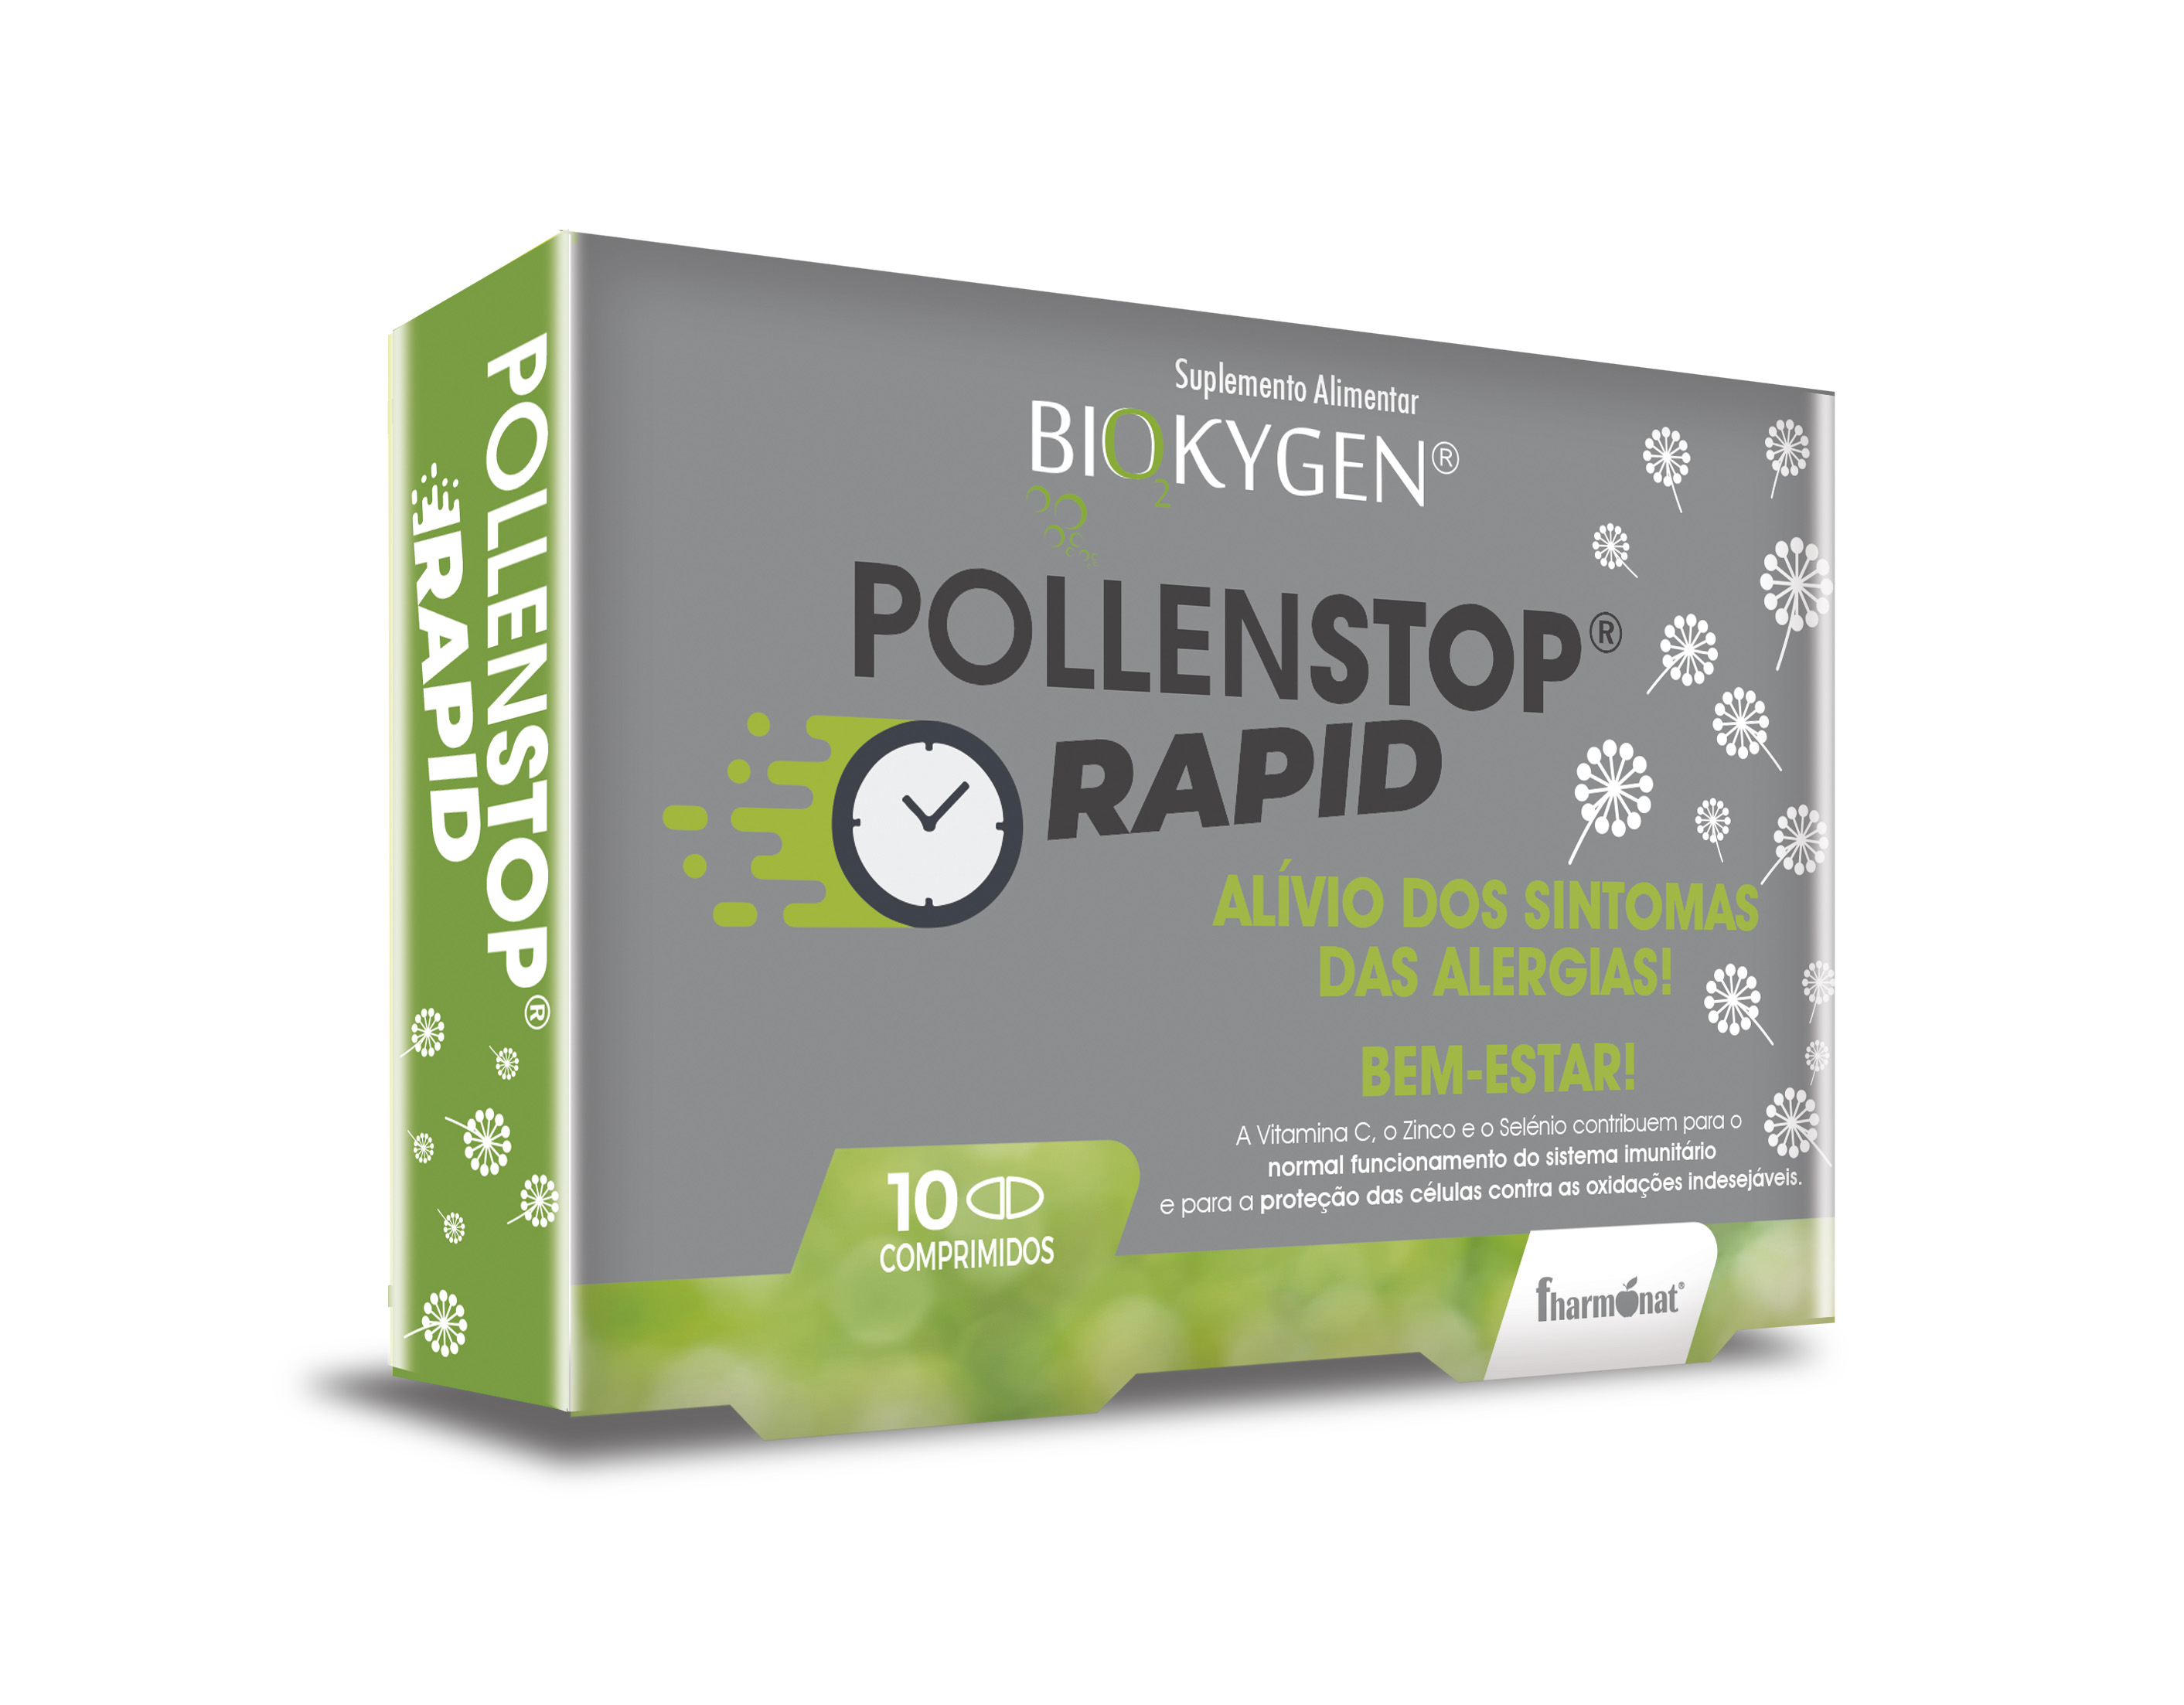 5300834 biokygen pollenstop rapid 10 comps fitness, nutrition